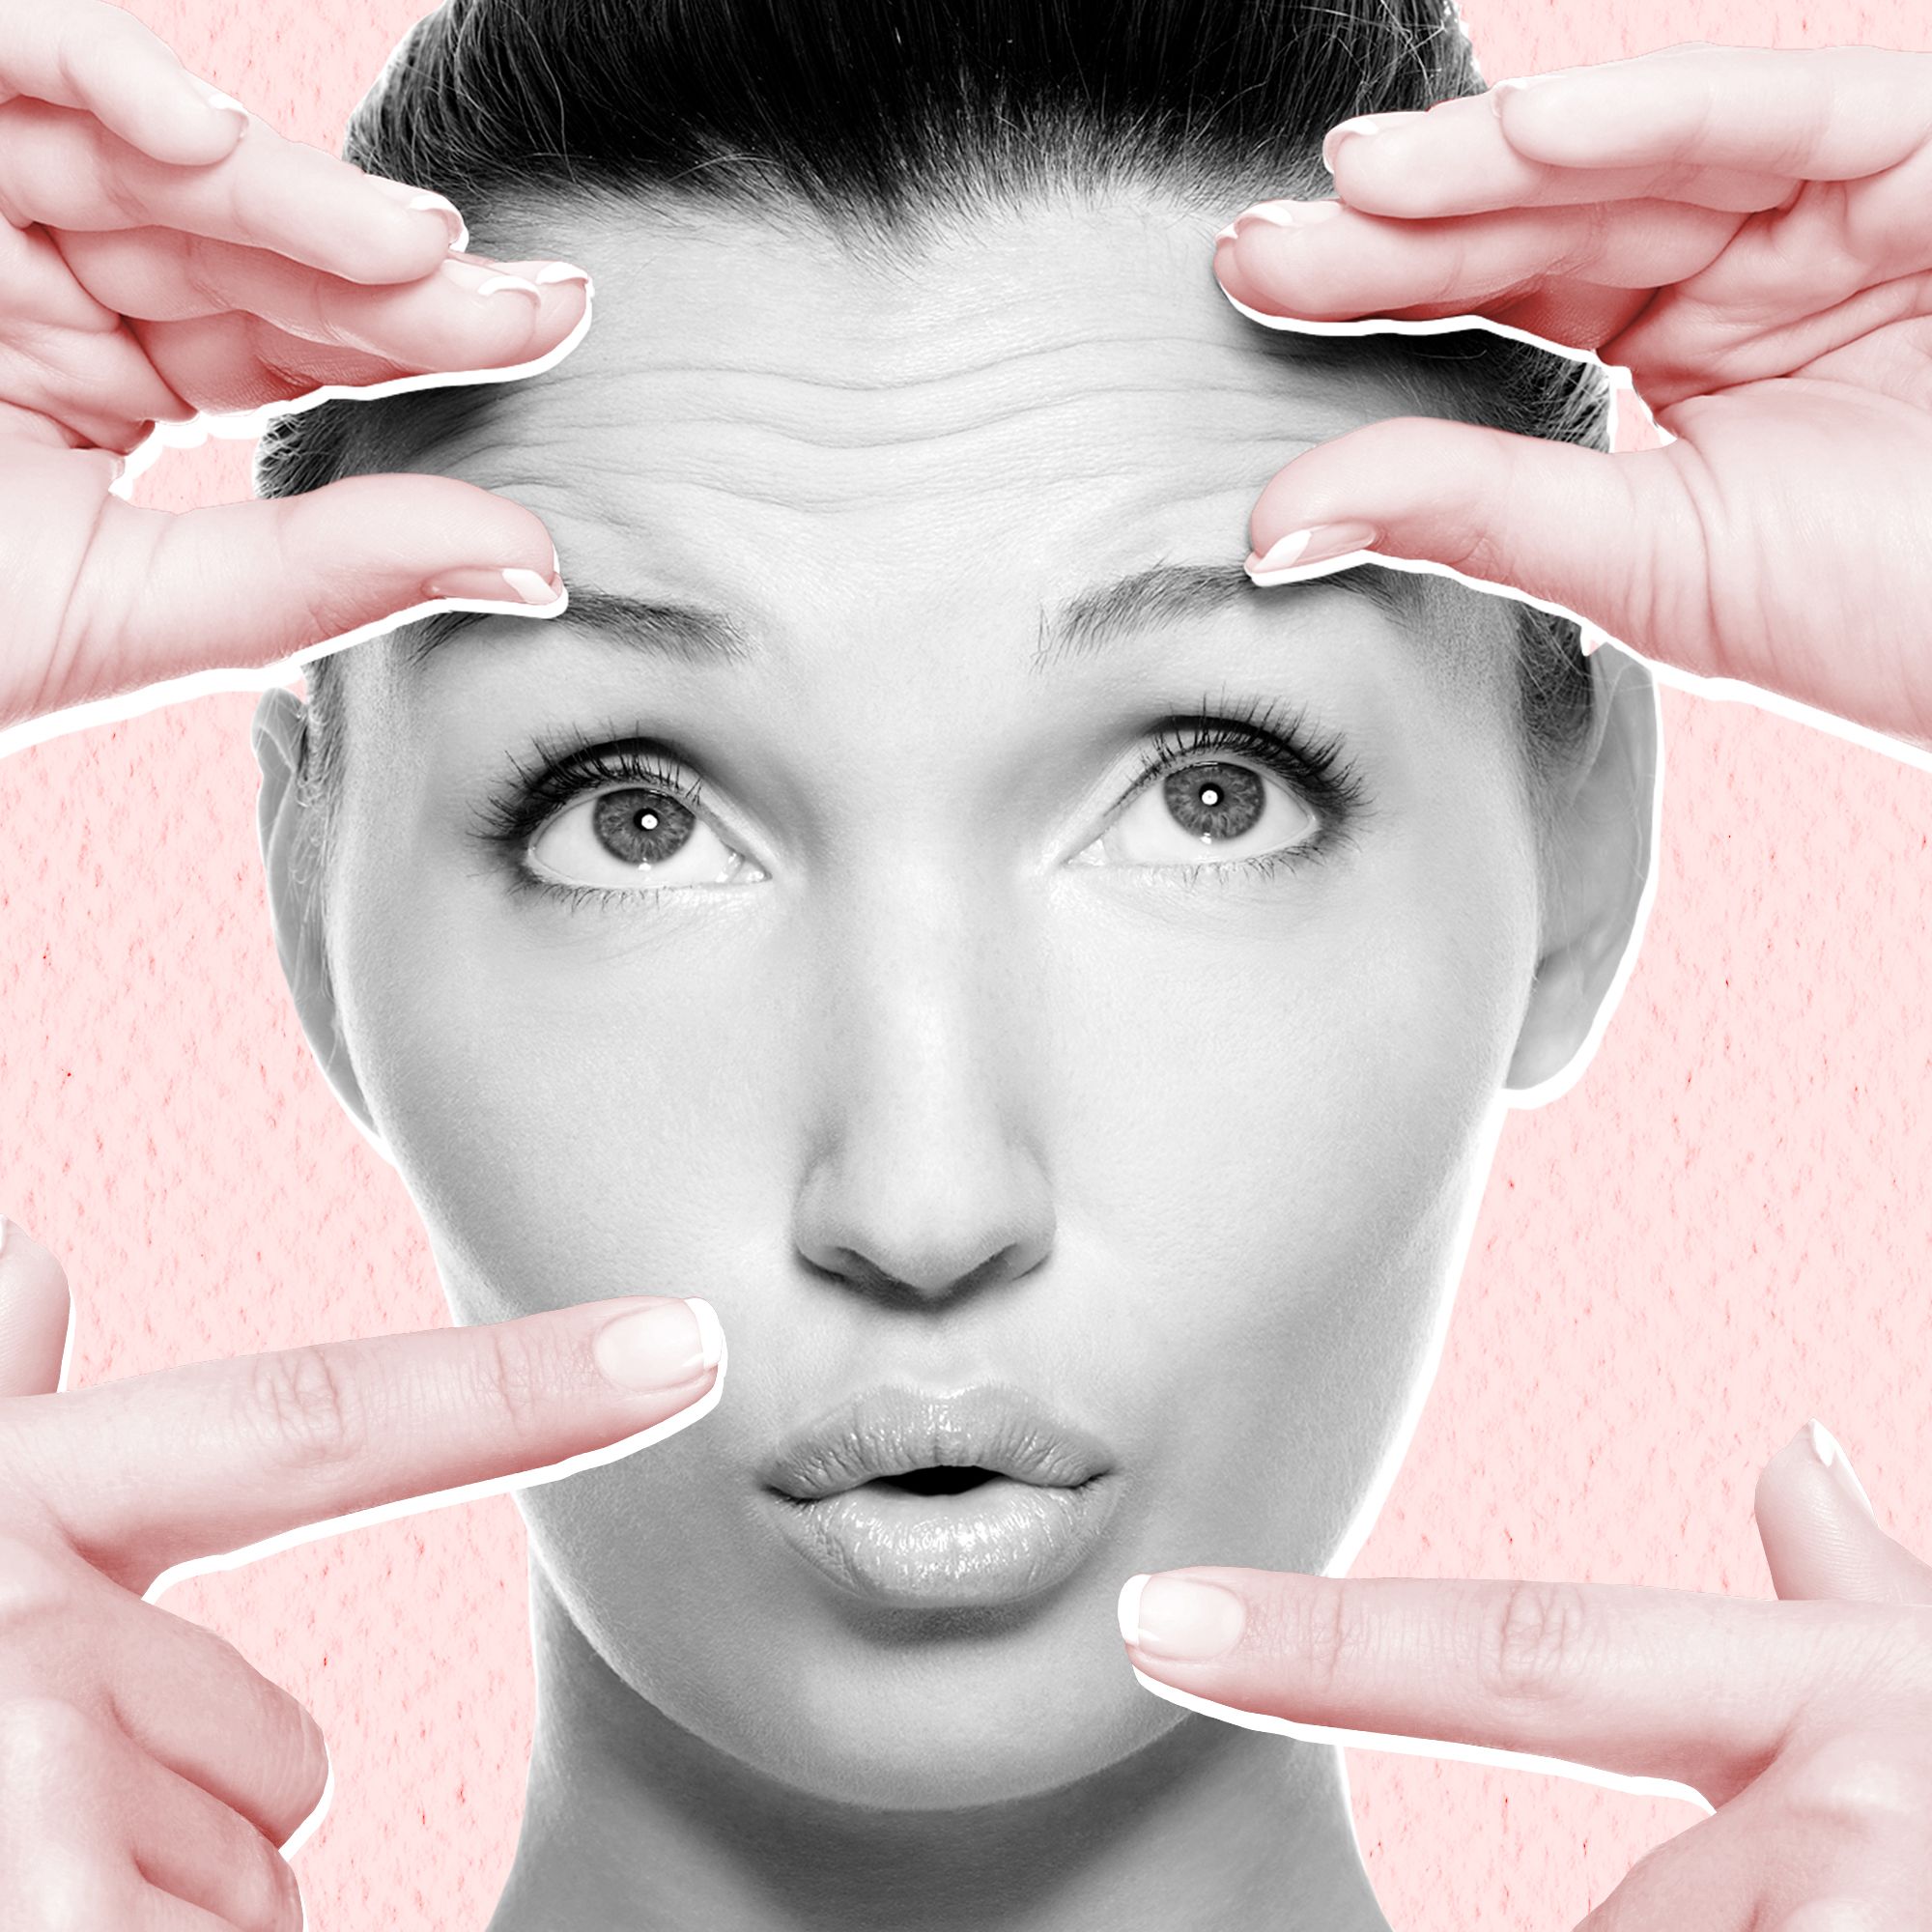 Facial-Flex Official Website: No. 1 Facial Exercise Device